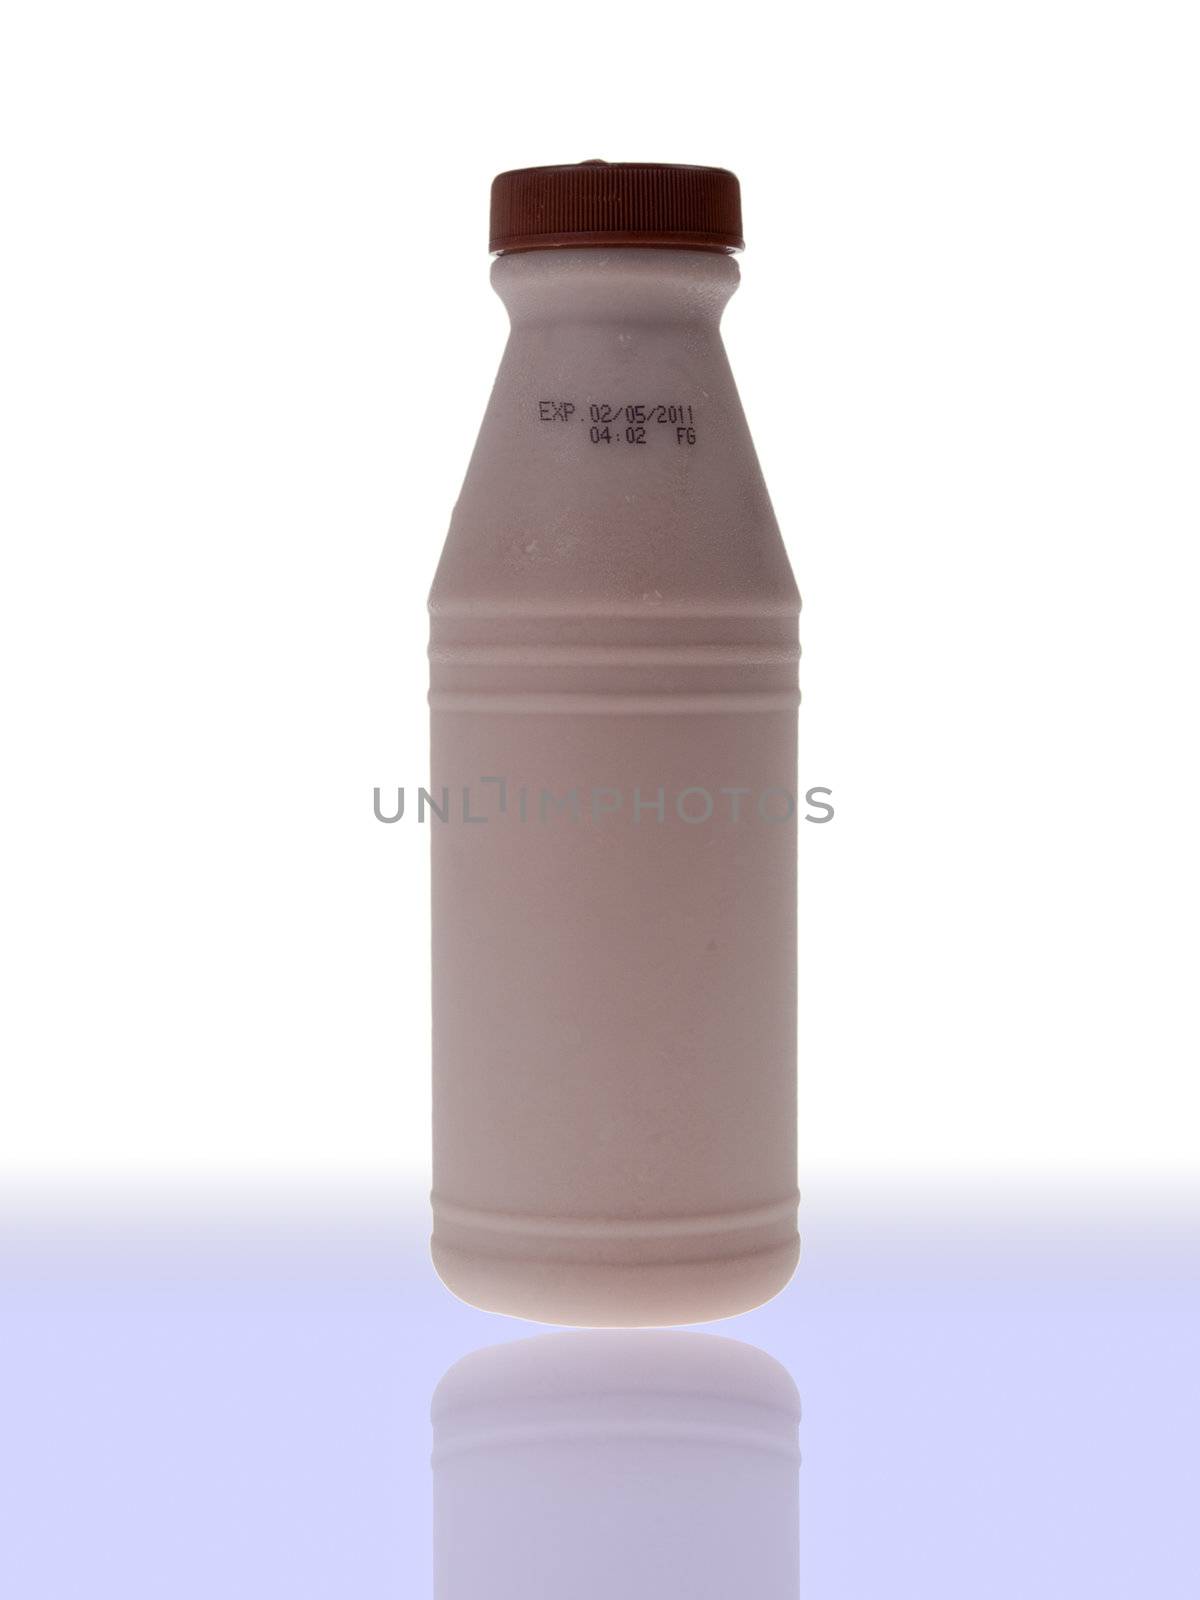 Bottle of fresh milk